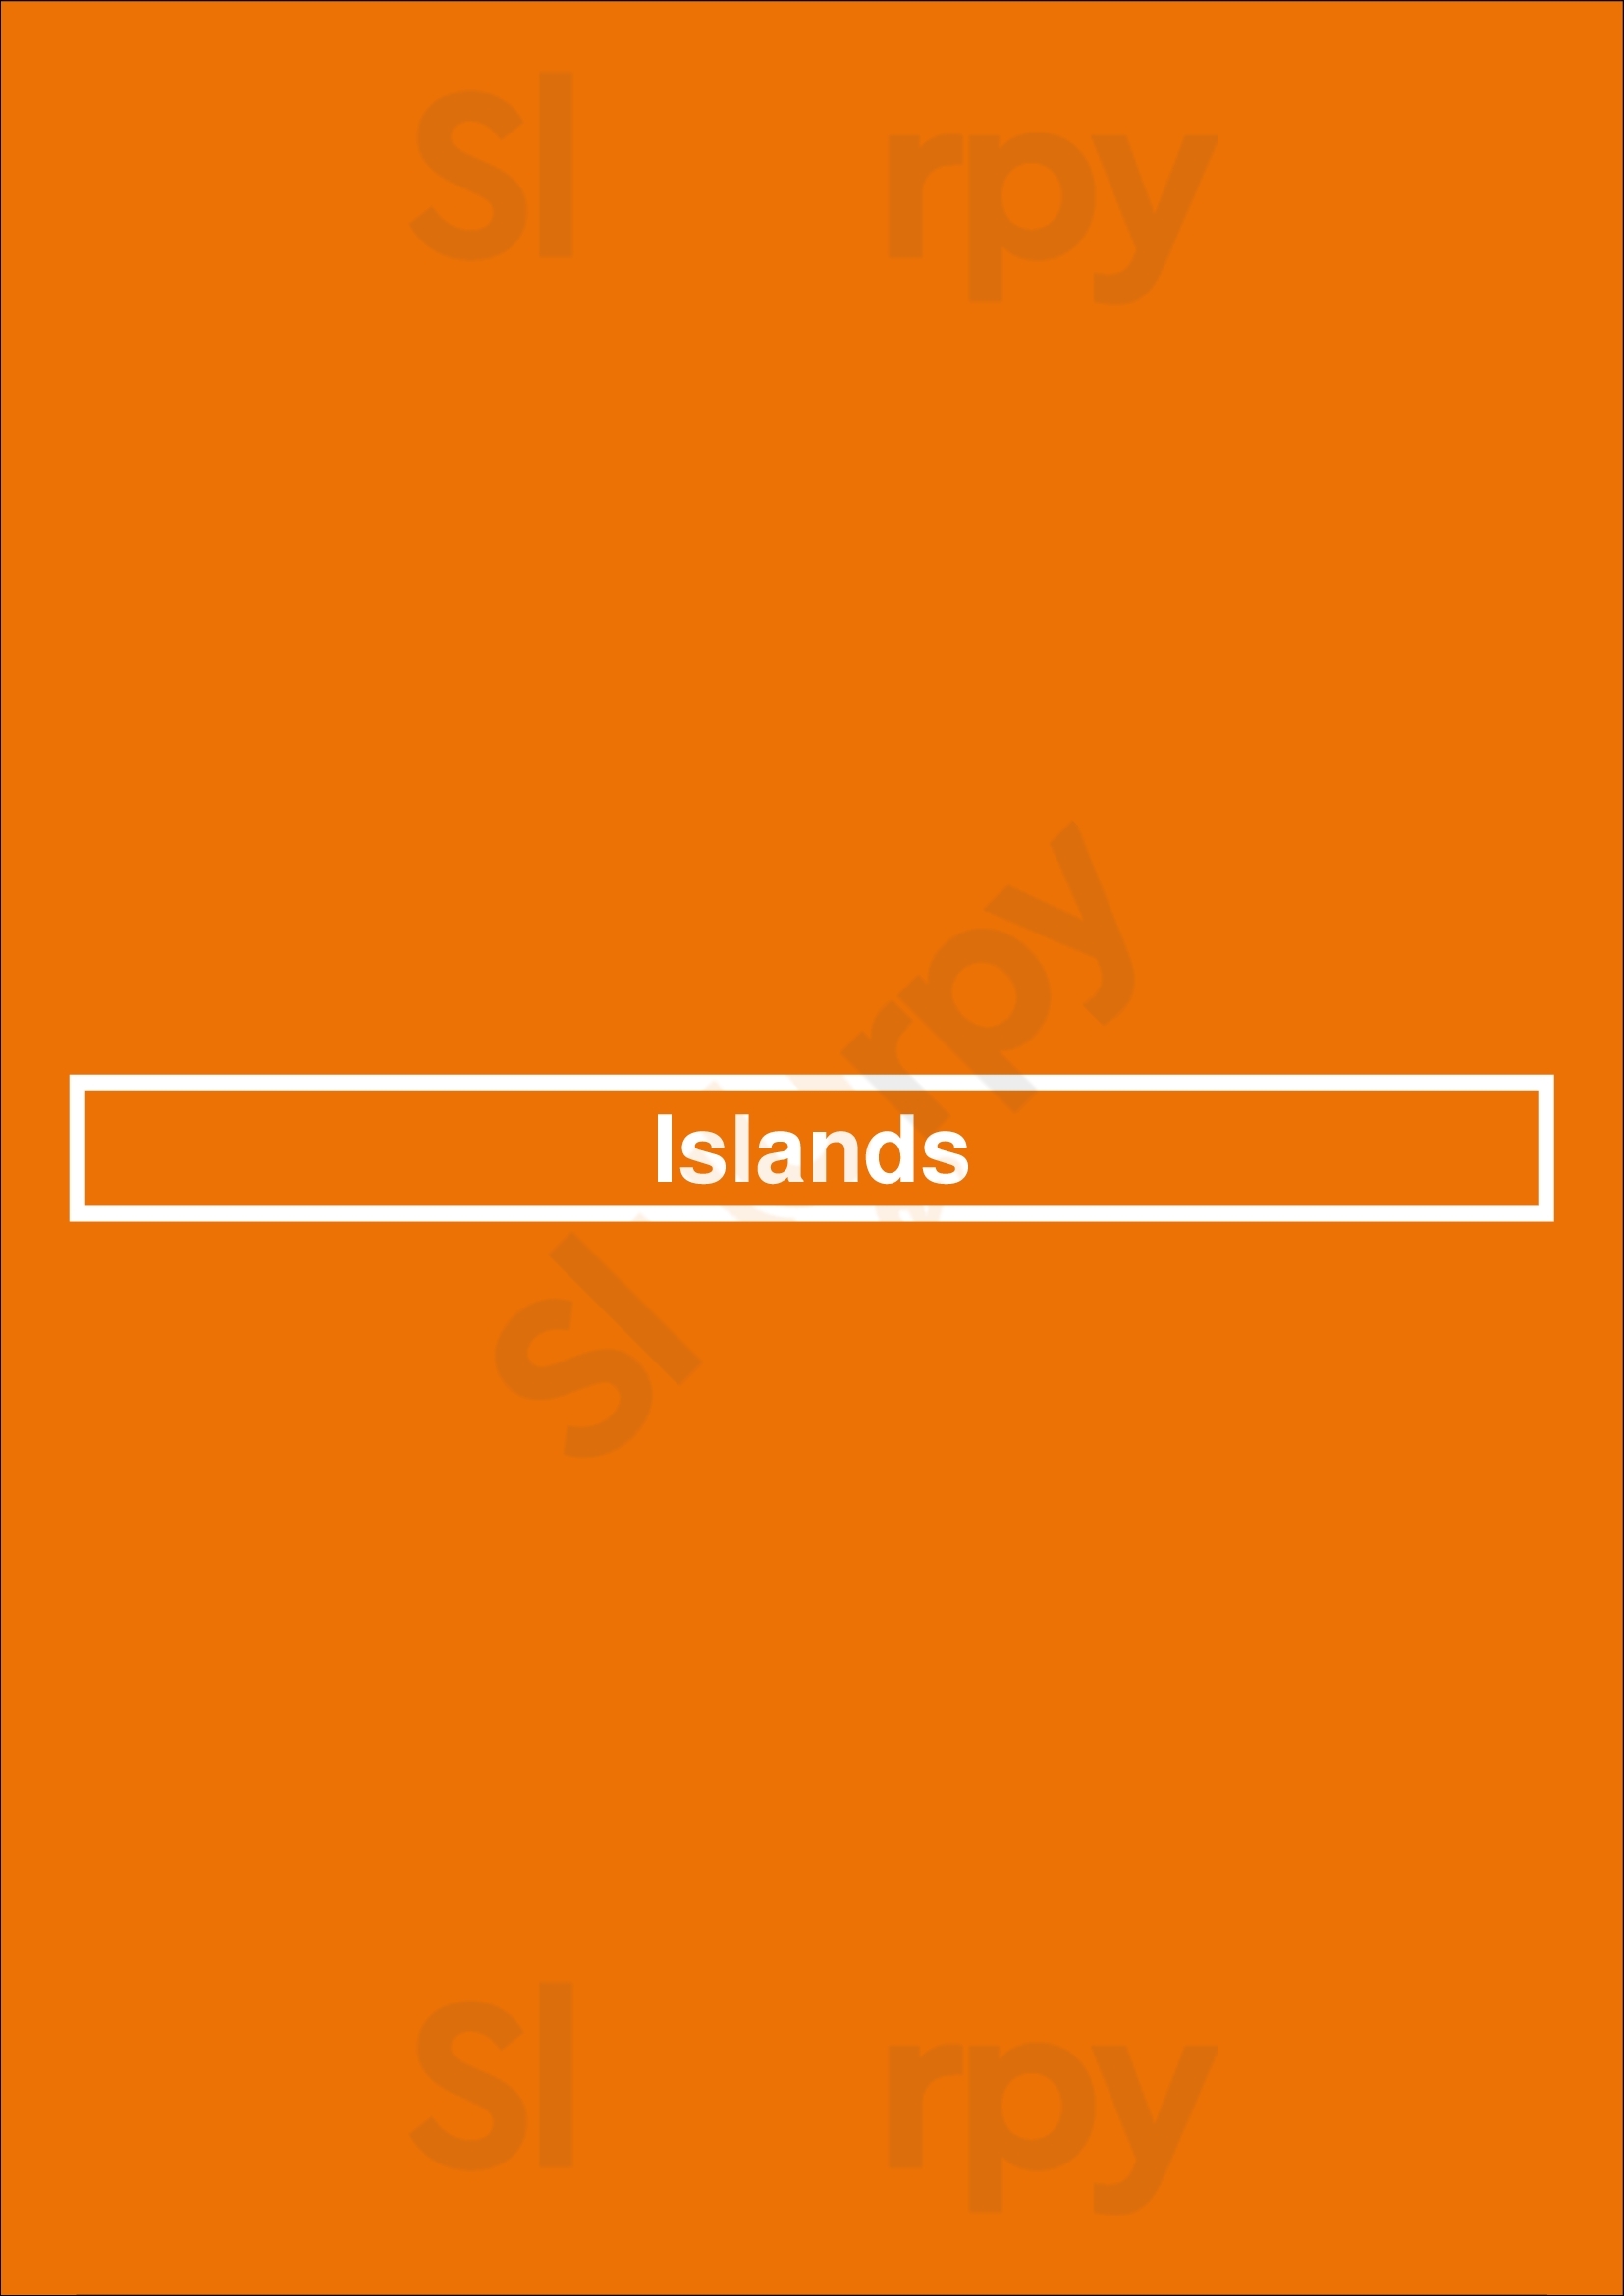 Islands Los Angeles Menu - 1